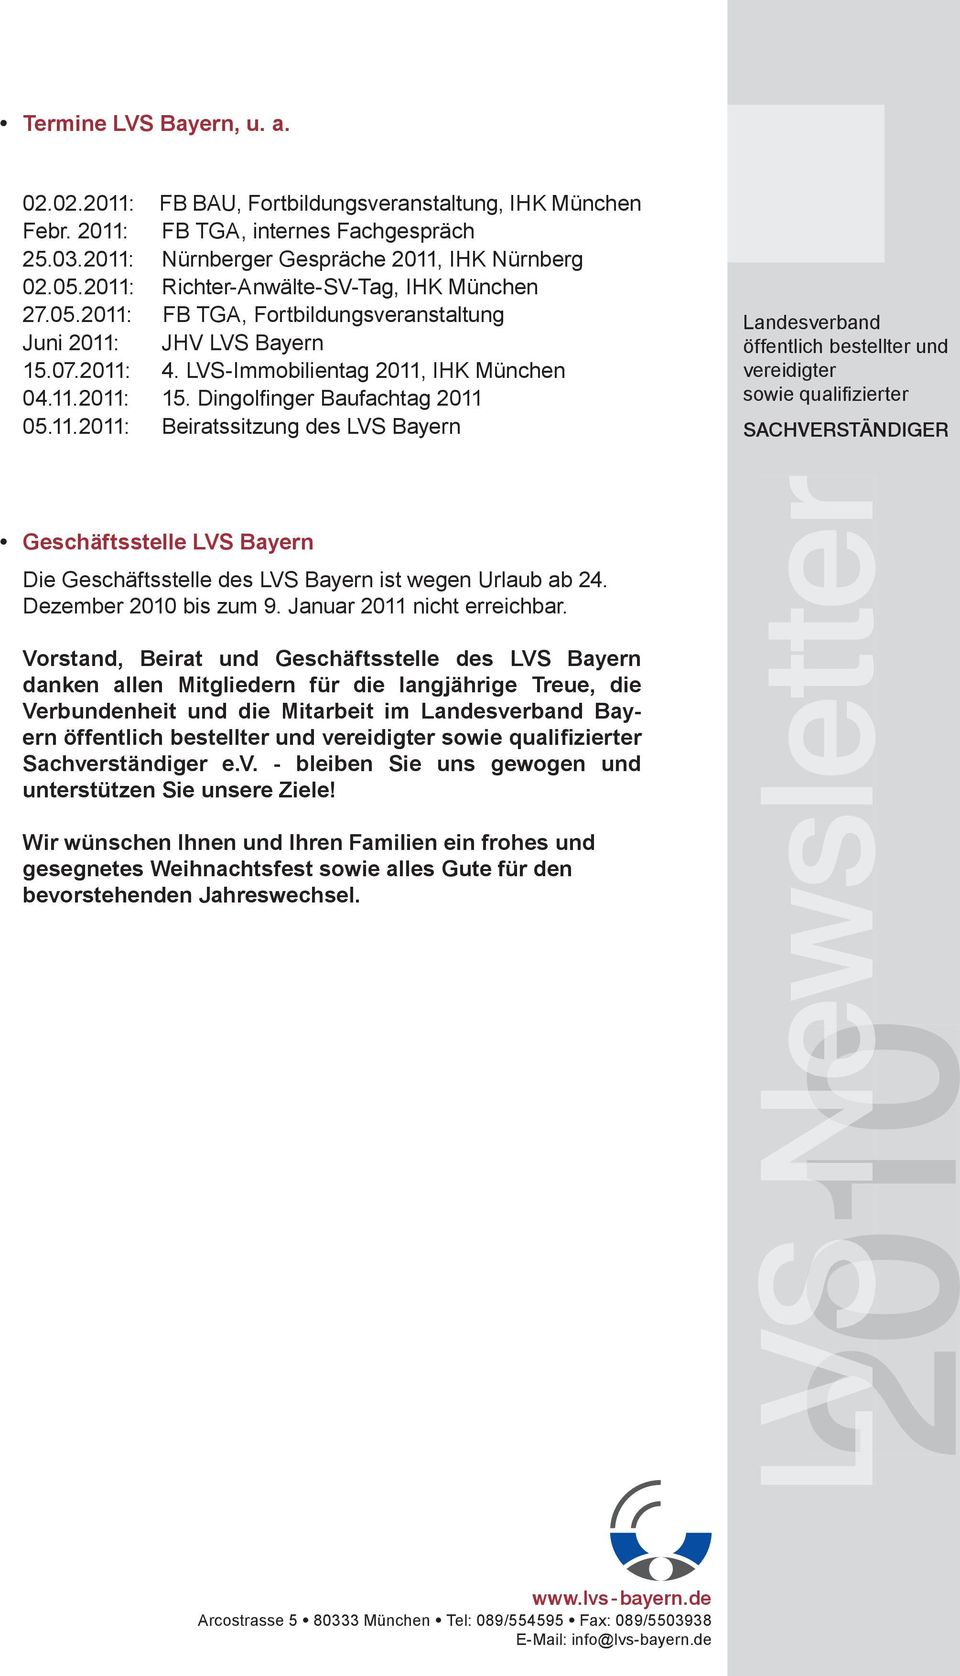 Dingolfi nger Baufachtag 2011 05.11.2011: Beiratssitzung des LVS Bayern Geschäftsstelle LVS Bayern Die Geschäftsstelle des LVS Bayern ist wegen Urlaub ab 24. Dezember bis zum 9.